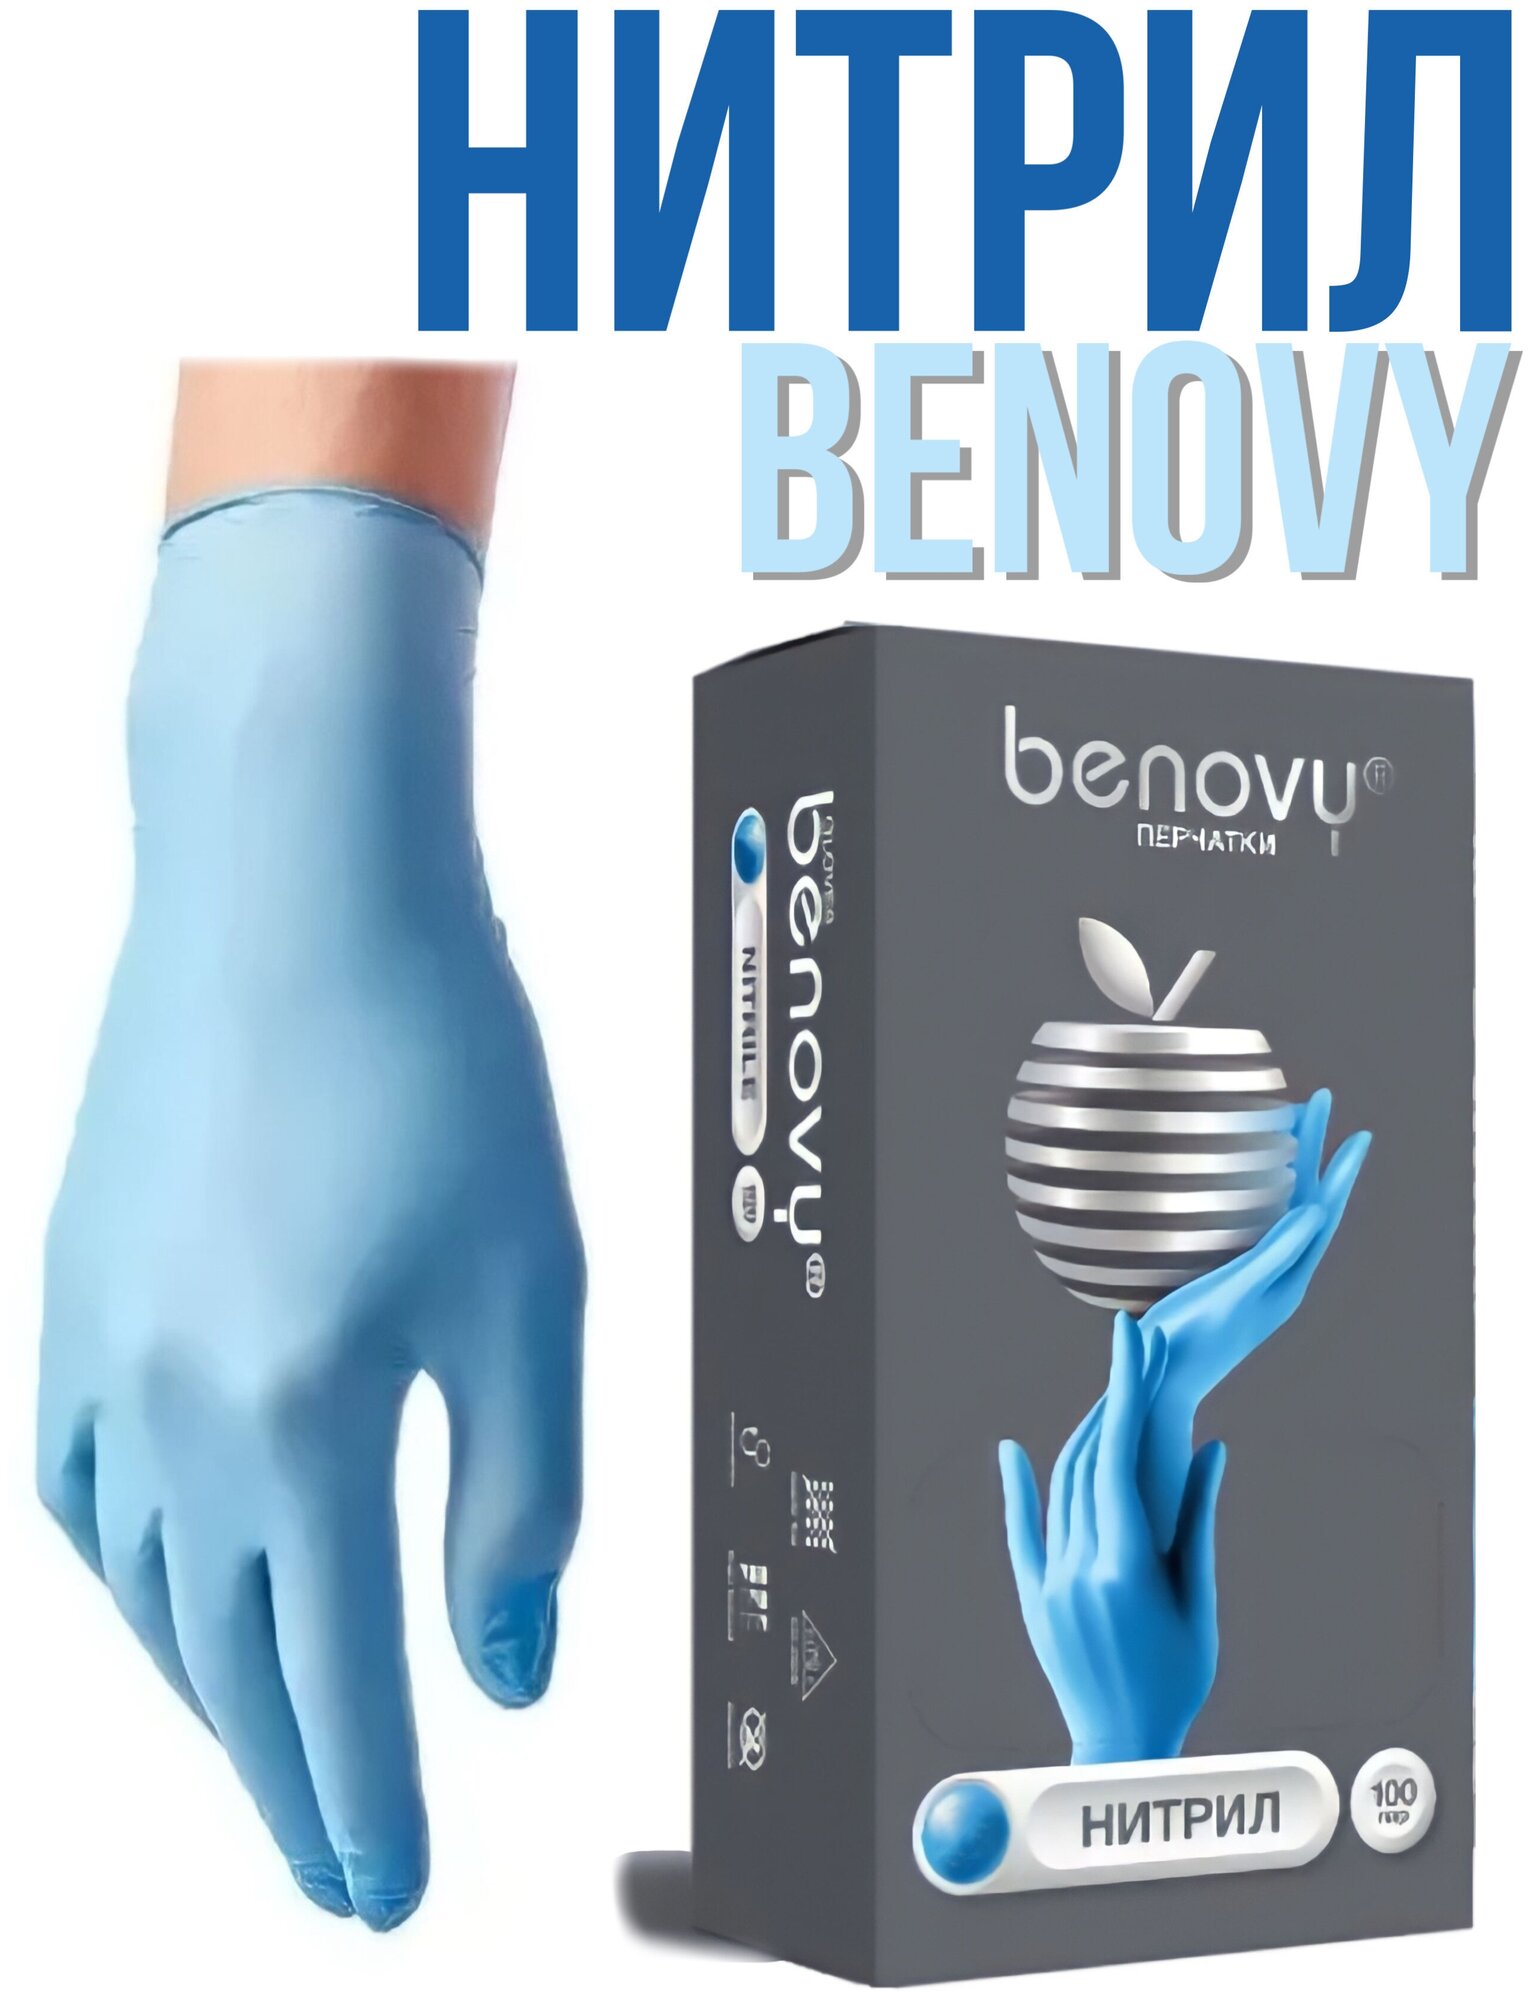 Перчатки медицинские BENOVY нитриловые голубые 100 пар, 200шт. S